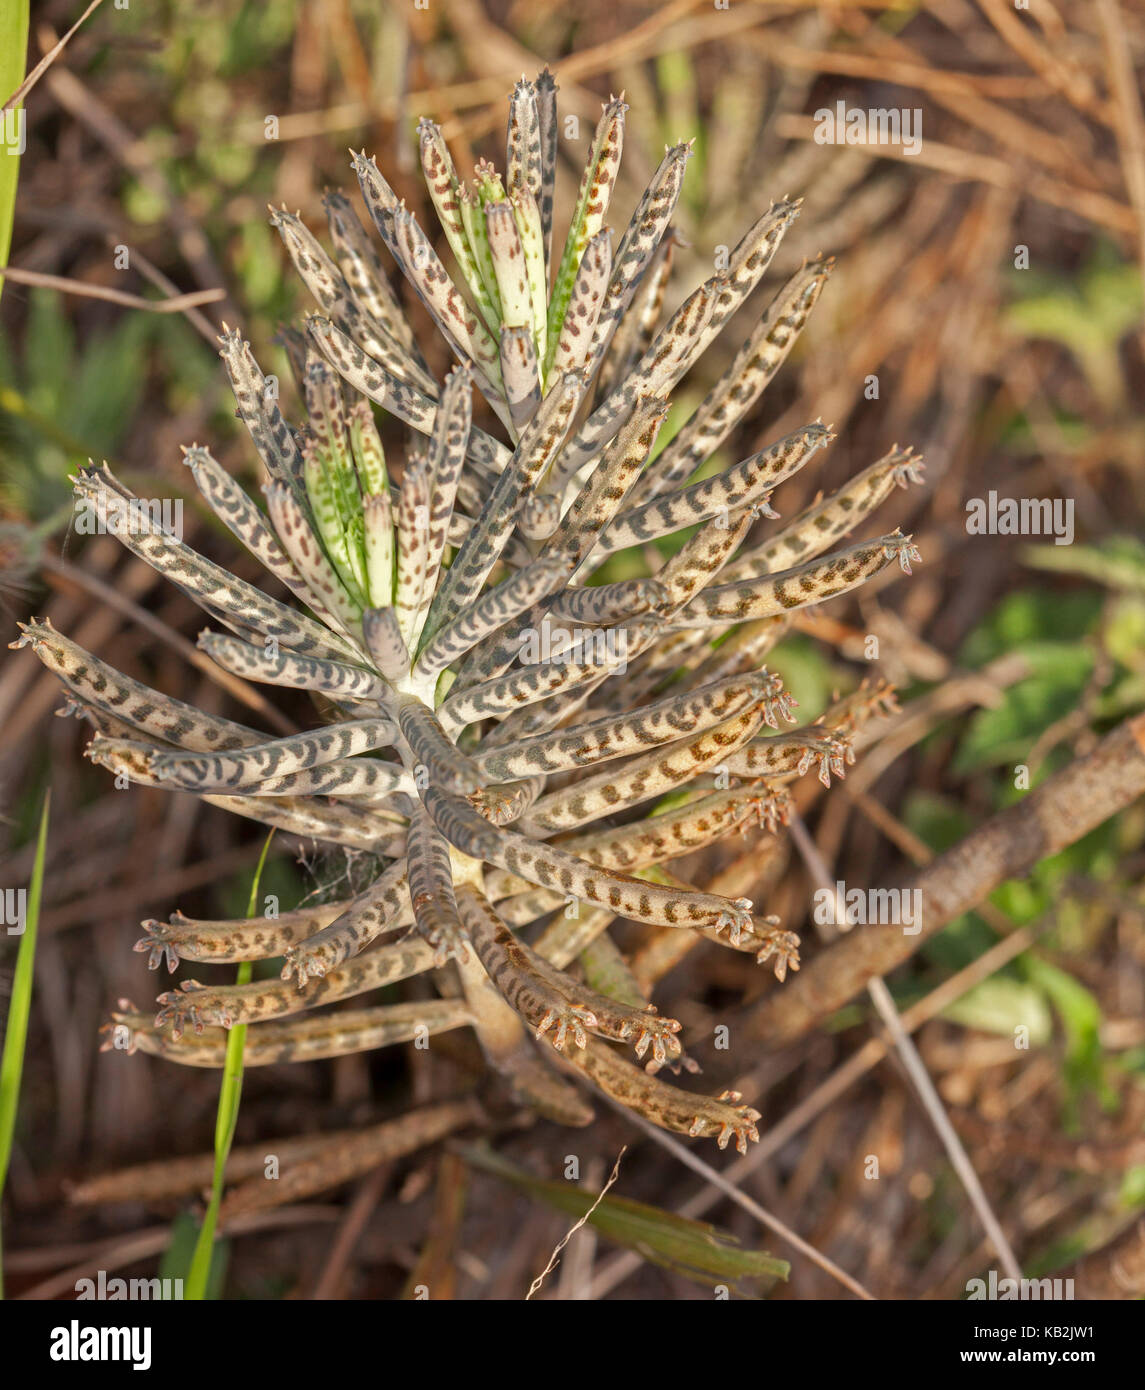 Madre de millones, plantas suculentas, bryophyllum / calanchoe delagoense syn. b. tubiflorum, especies de malezas invasoras en australia Foto de stock